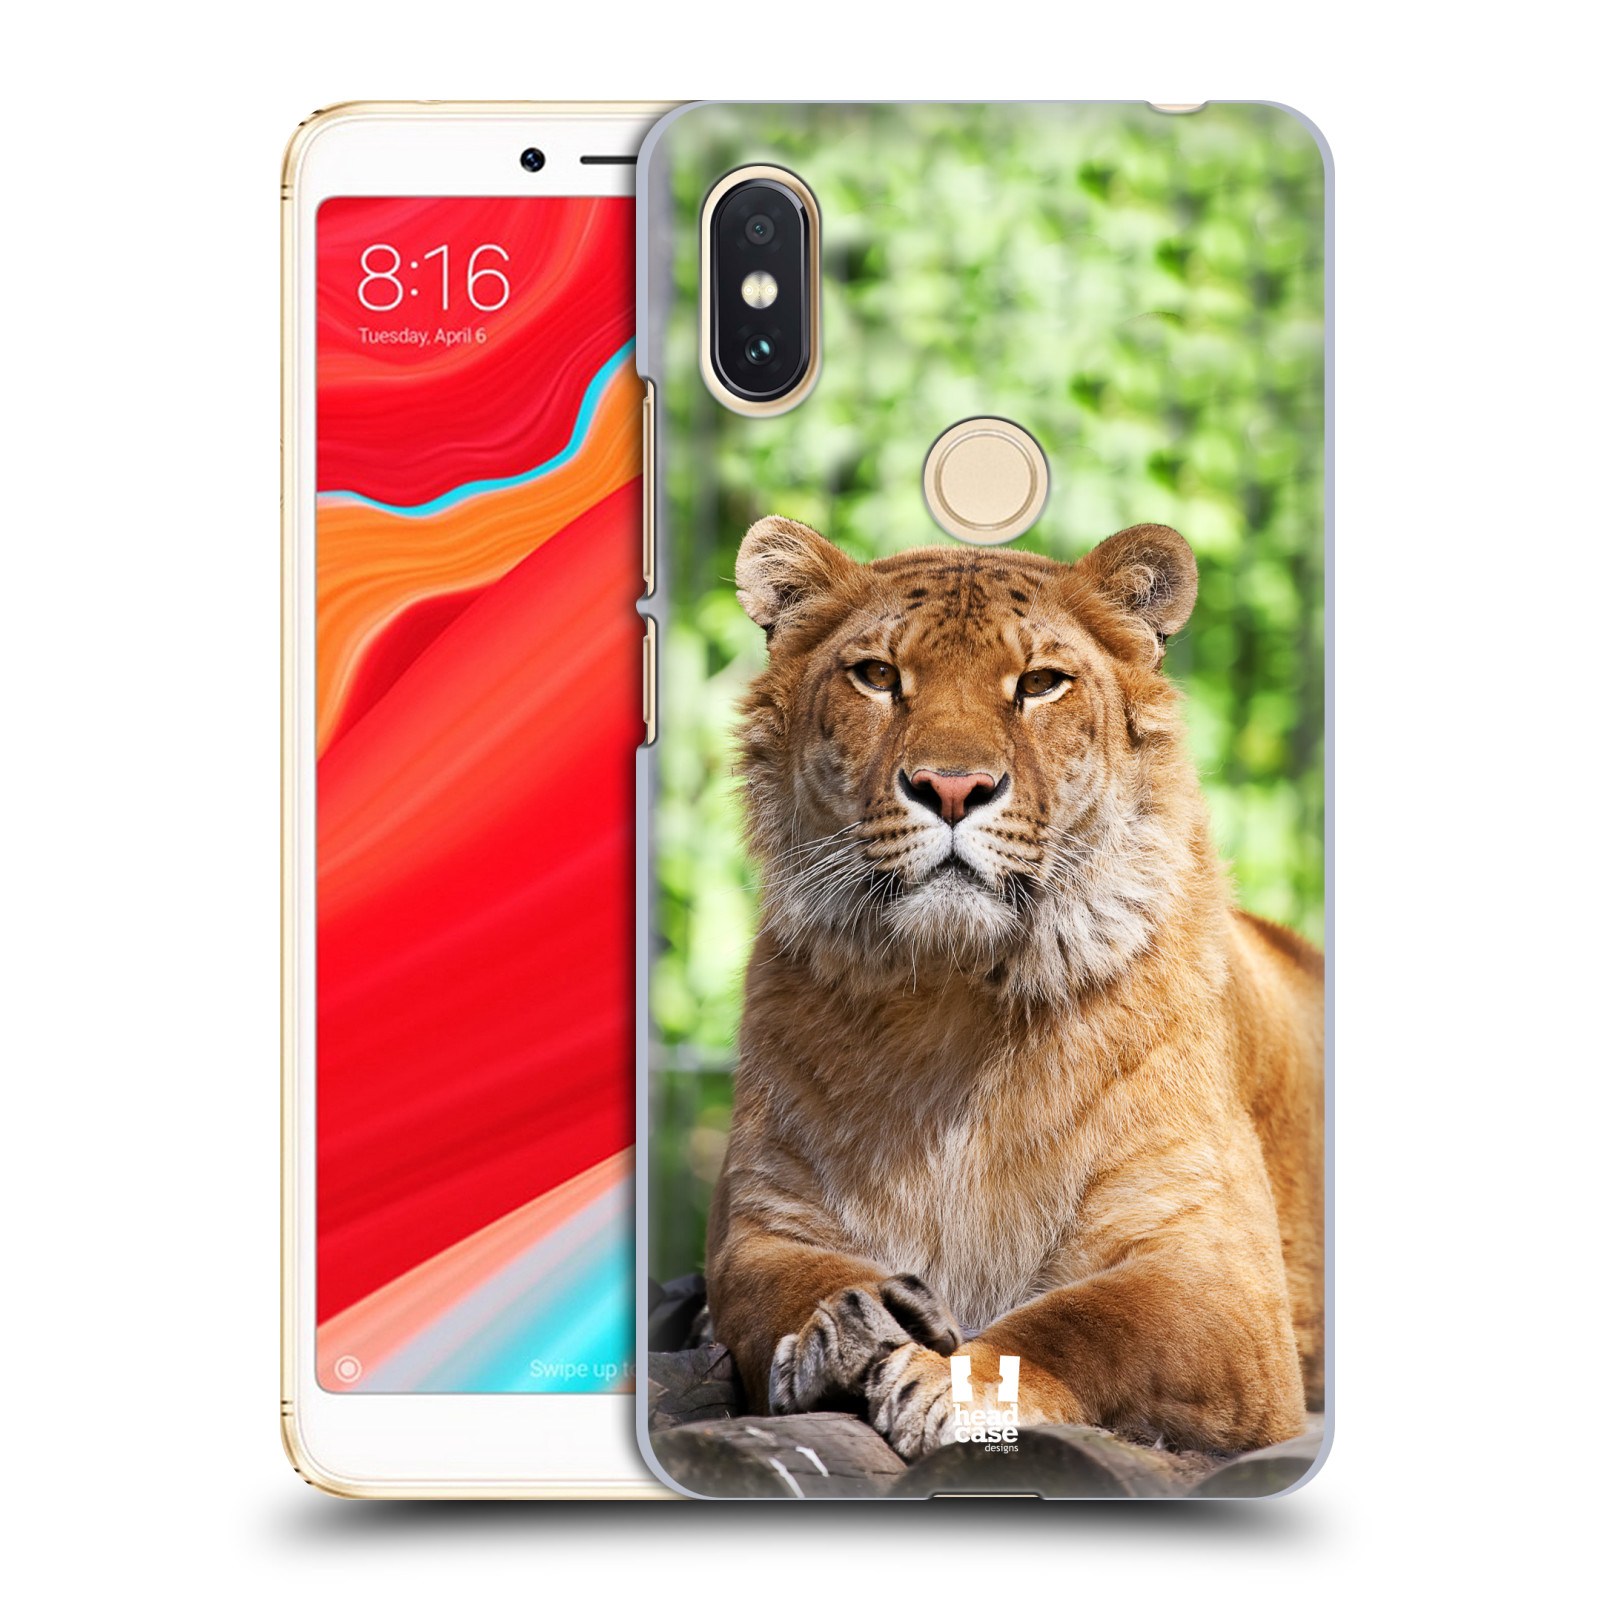 HEAD CASE plastový obal na mobil Xiaomi Redmi S2 vzor slavná zvířata foto tygr